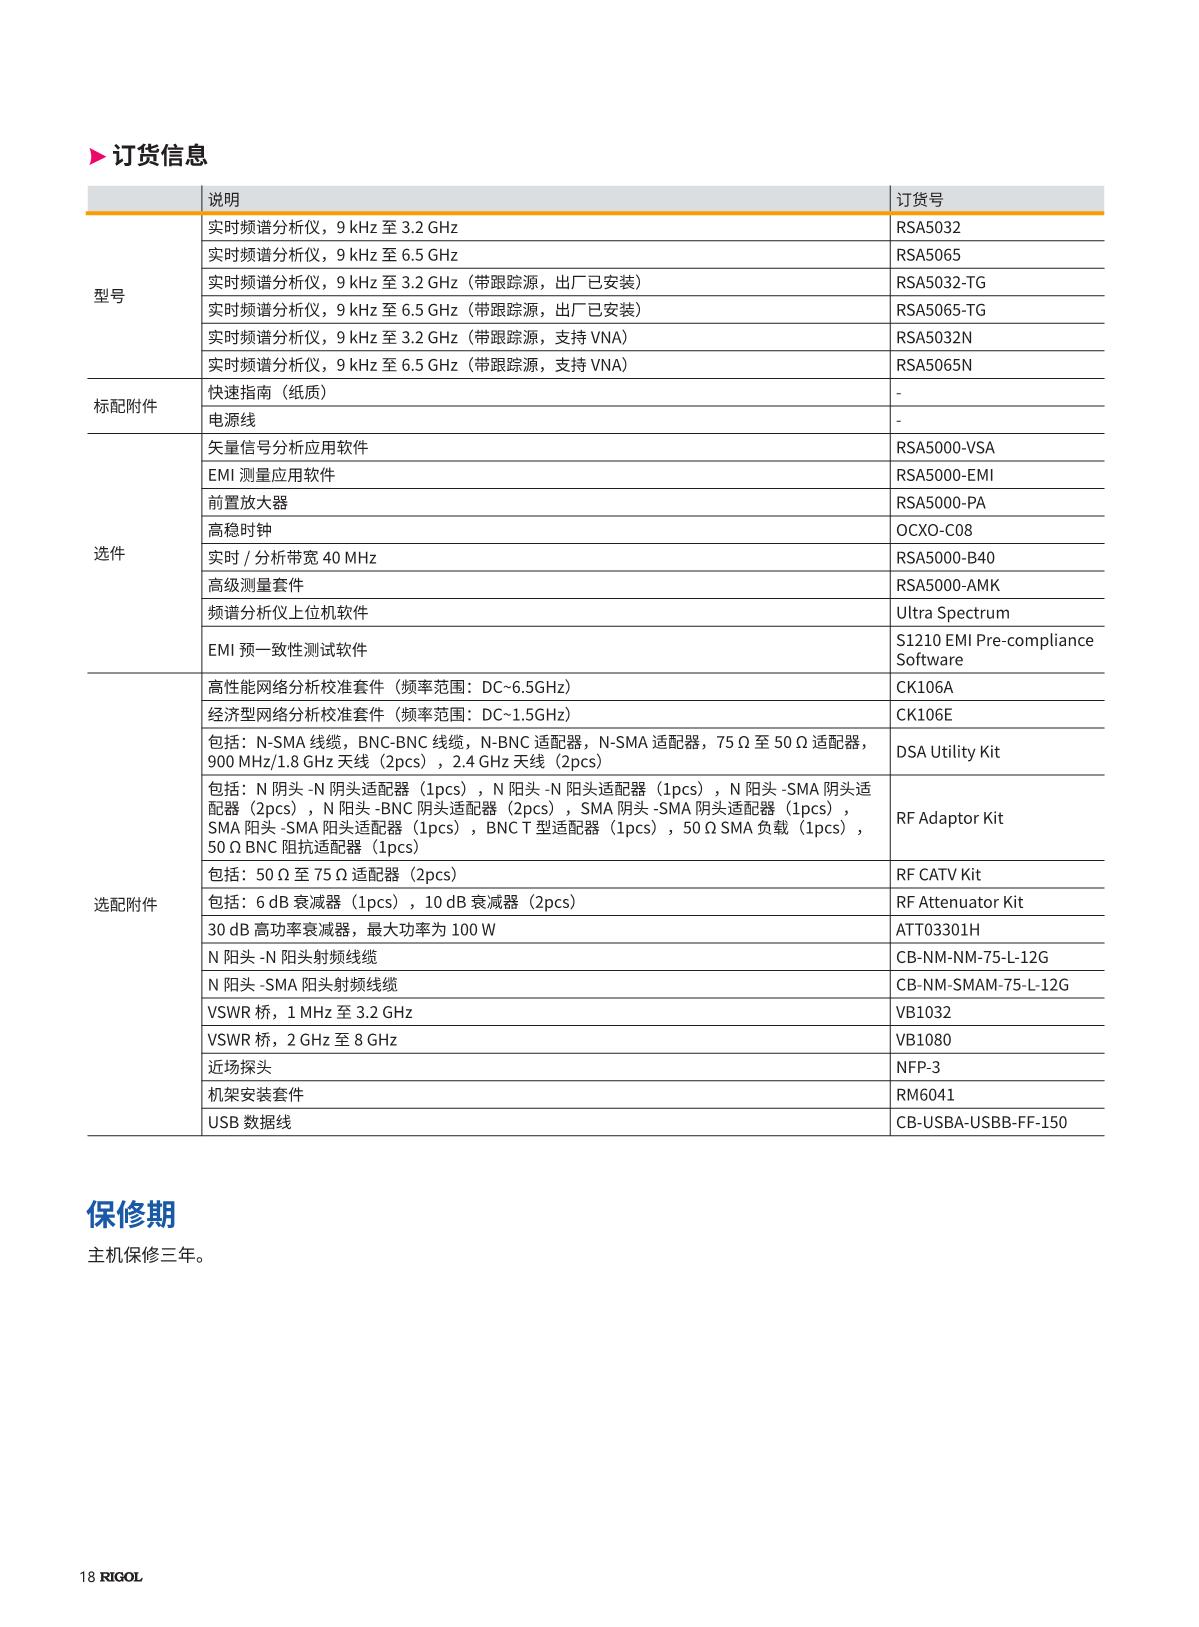 vna-RSA5000数据手册-202111-CN_tcm4-1873_18.JPG